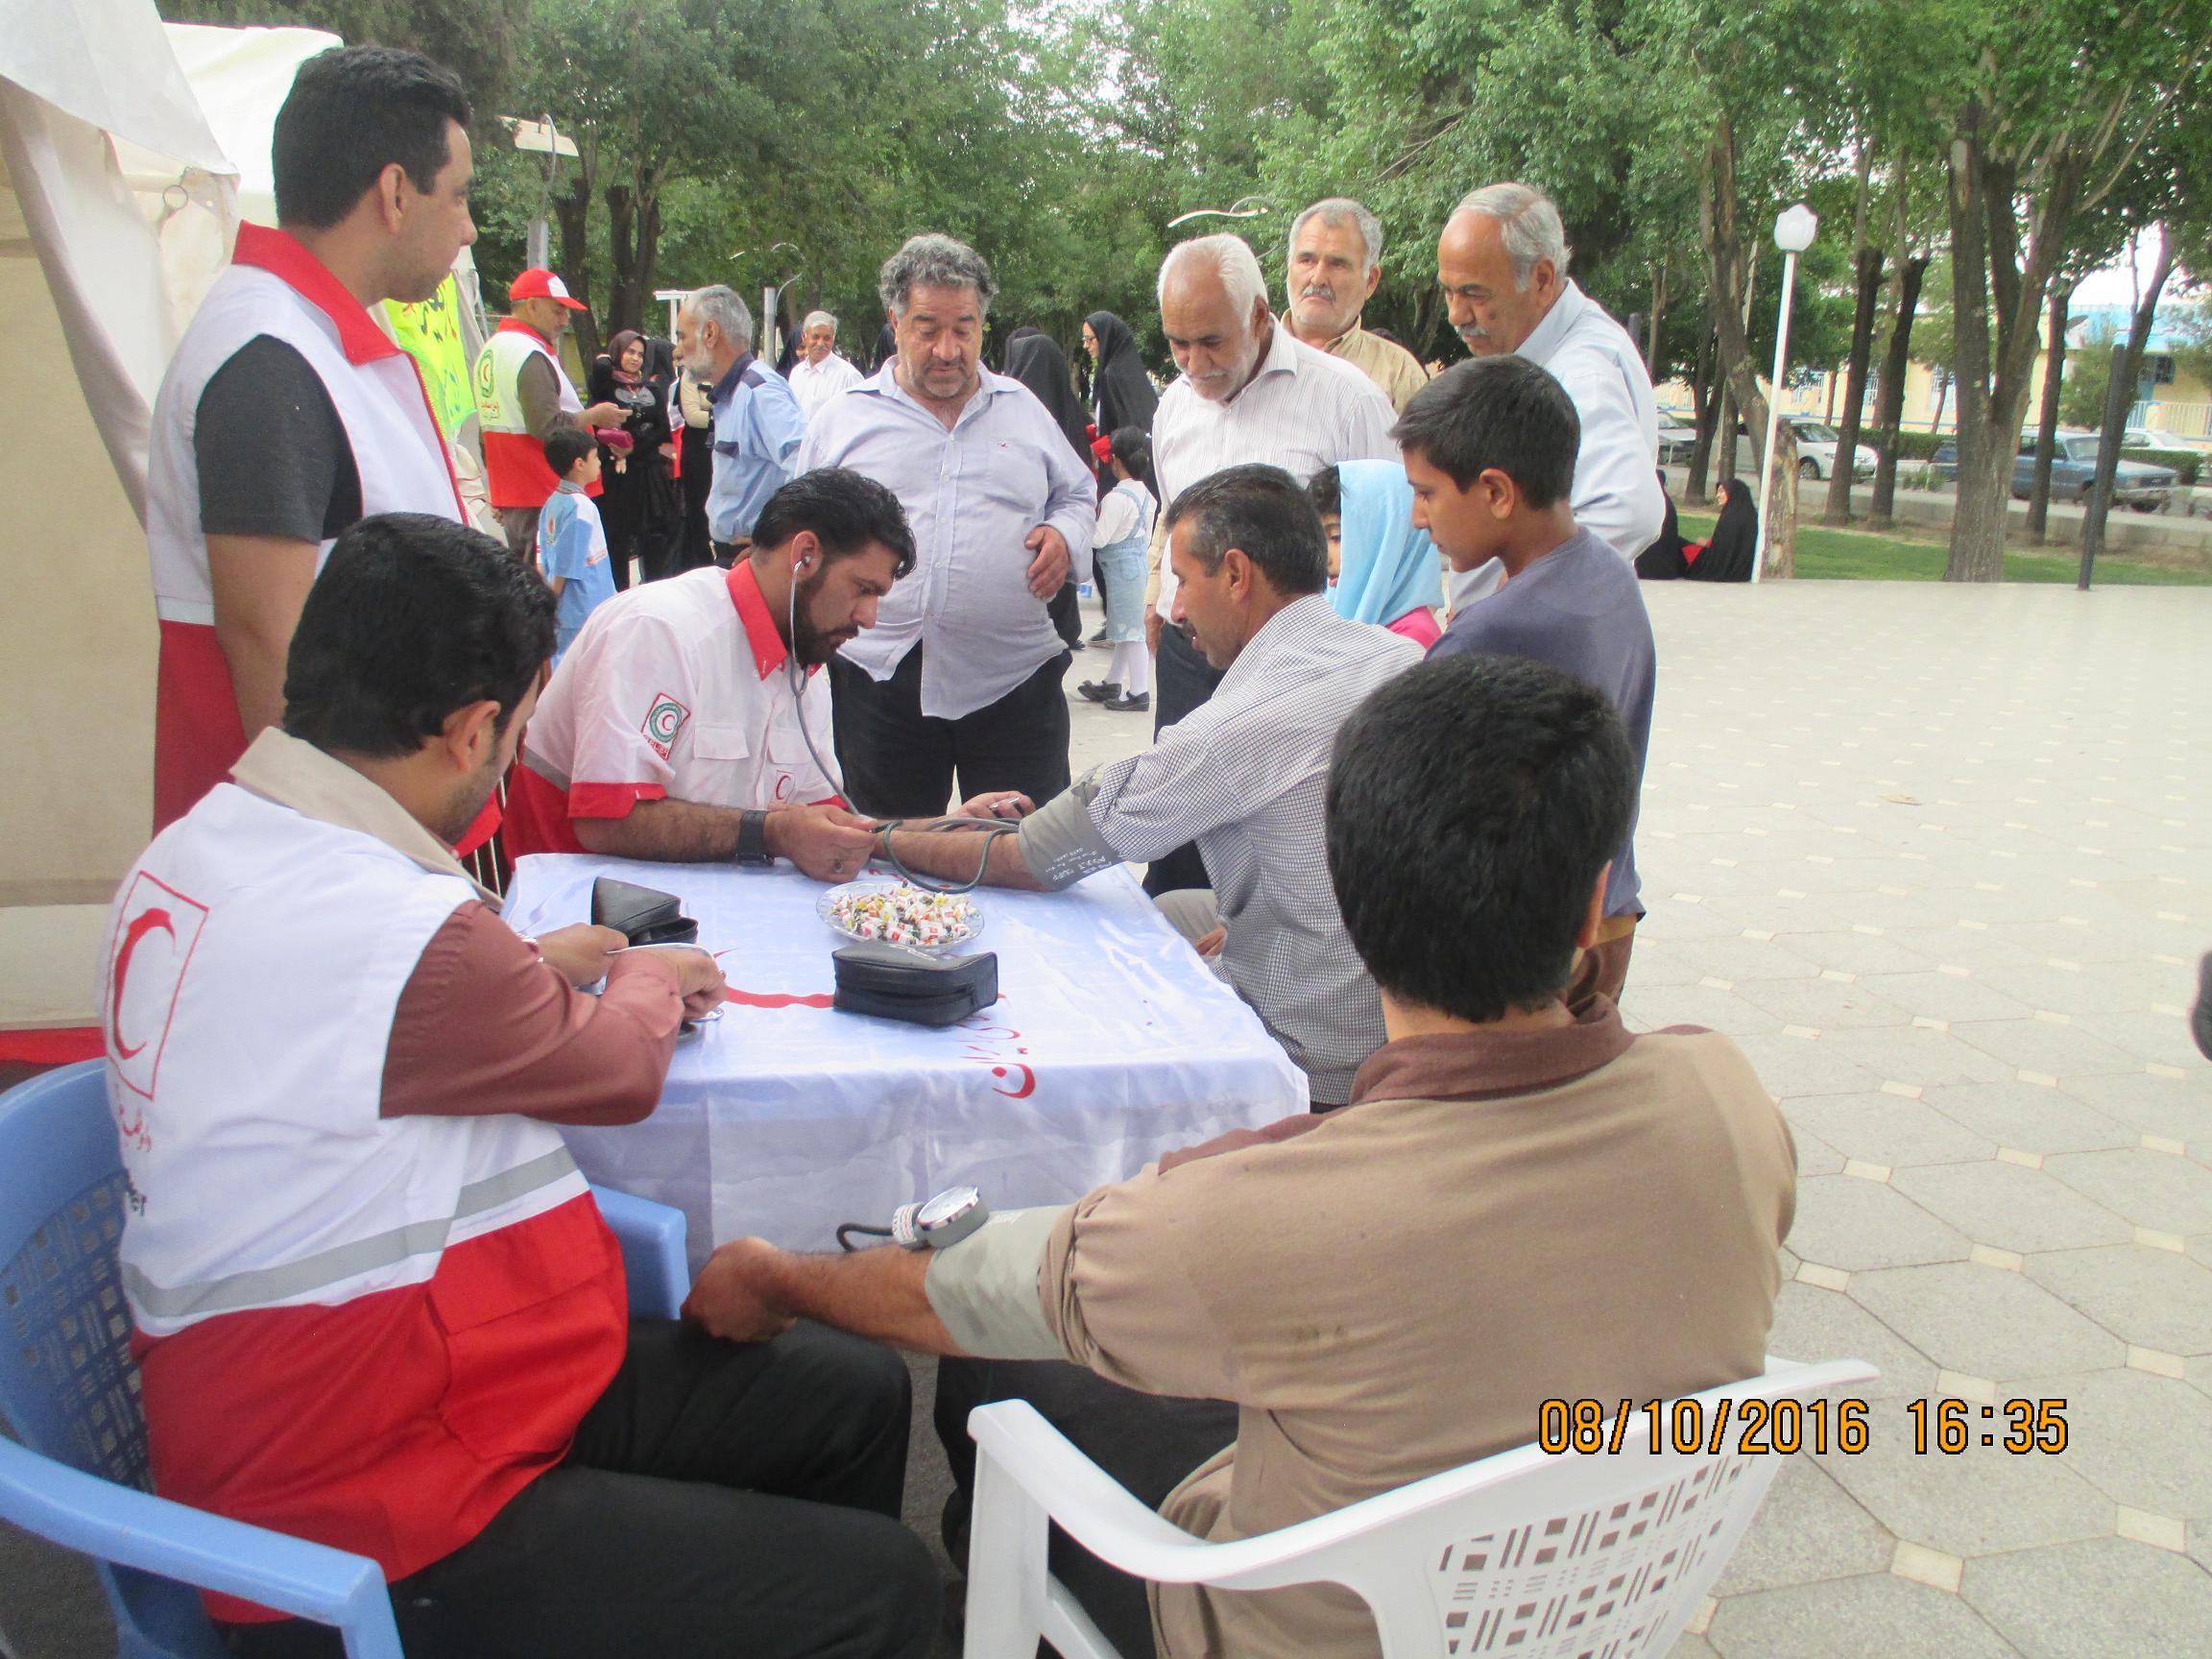 اجرای طرح همراهان مهربانی با حضور امدادگران ، جوانان وداوطلبان جمعیت هلال احمر رفسنجان